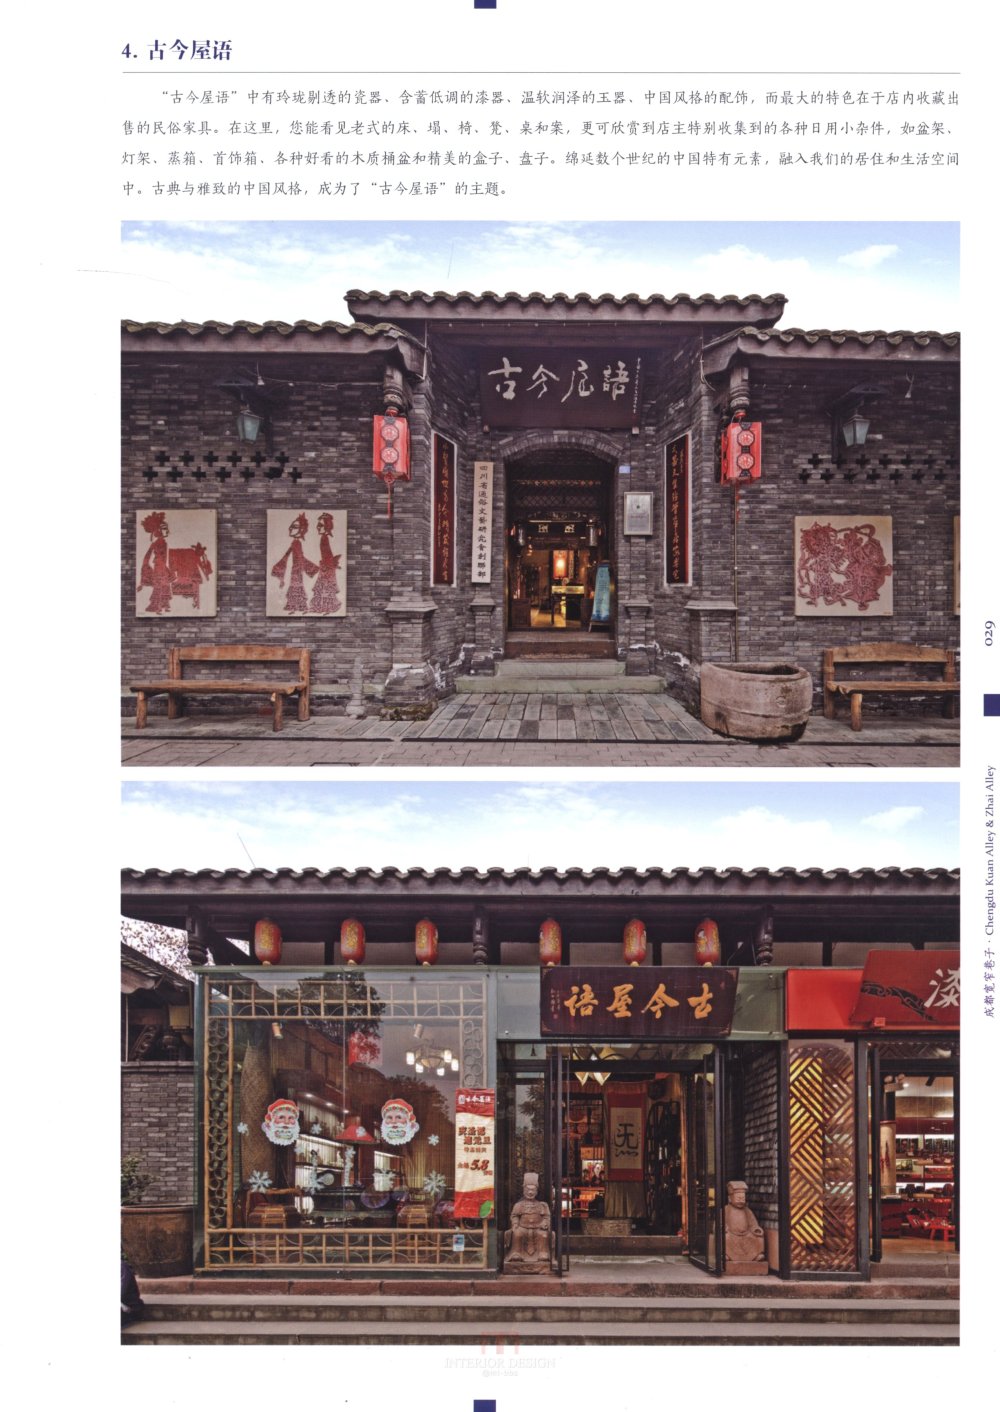 中国最美的老街-1_科比 0022.jpg